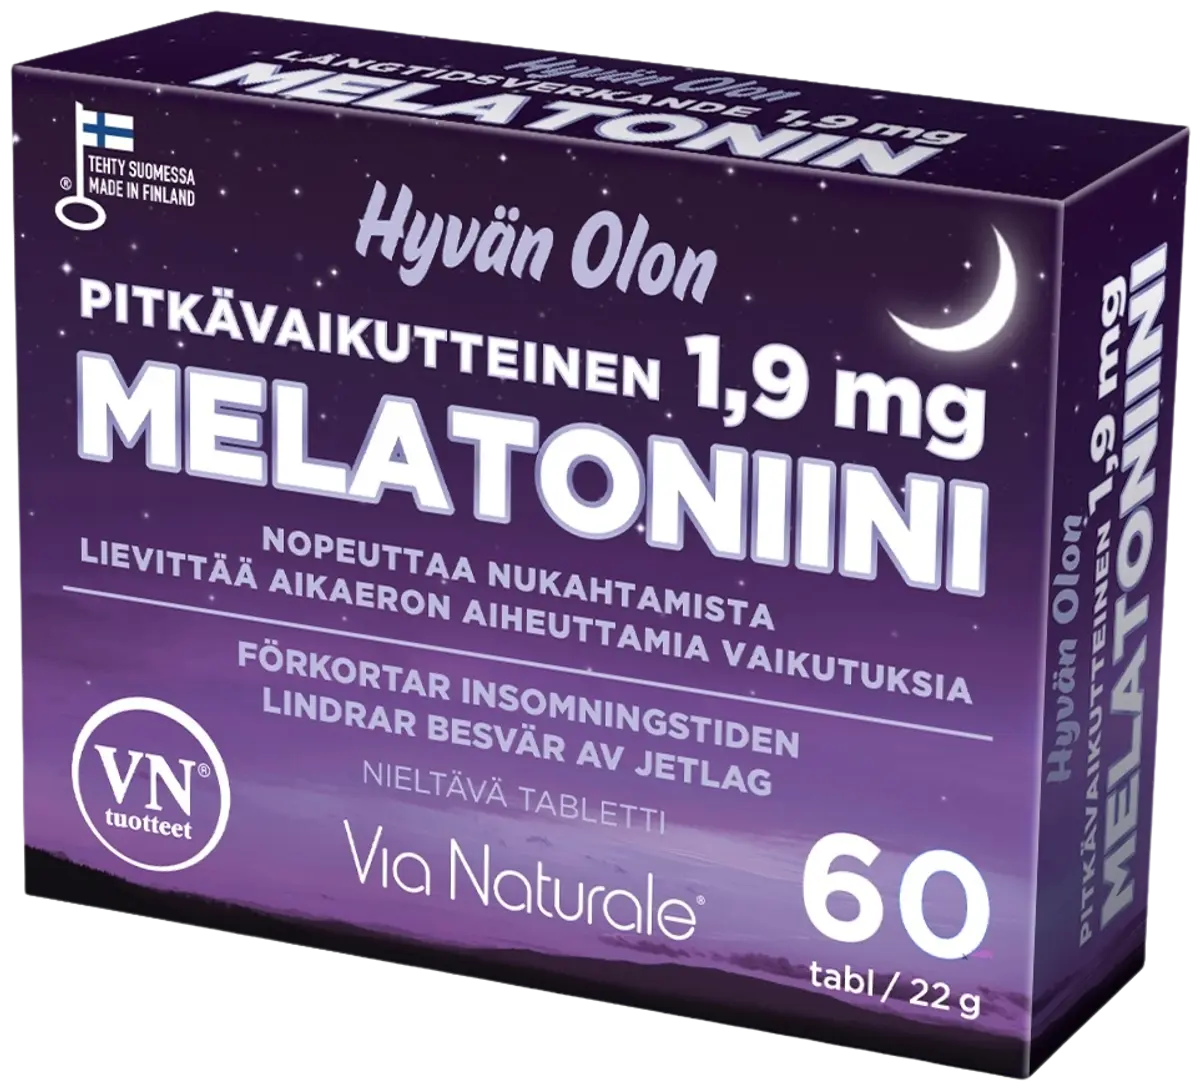 Hyvän Olon Pitkävaikutteinen Melatoniini 1,9 mg 60 tabl Via Naturale